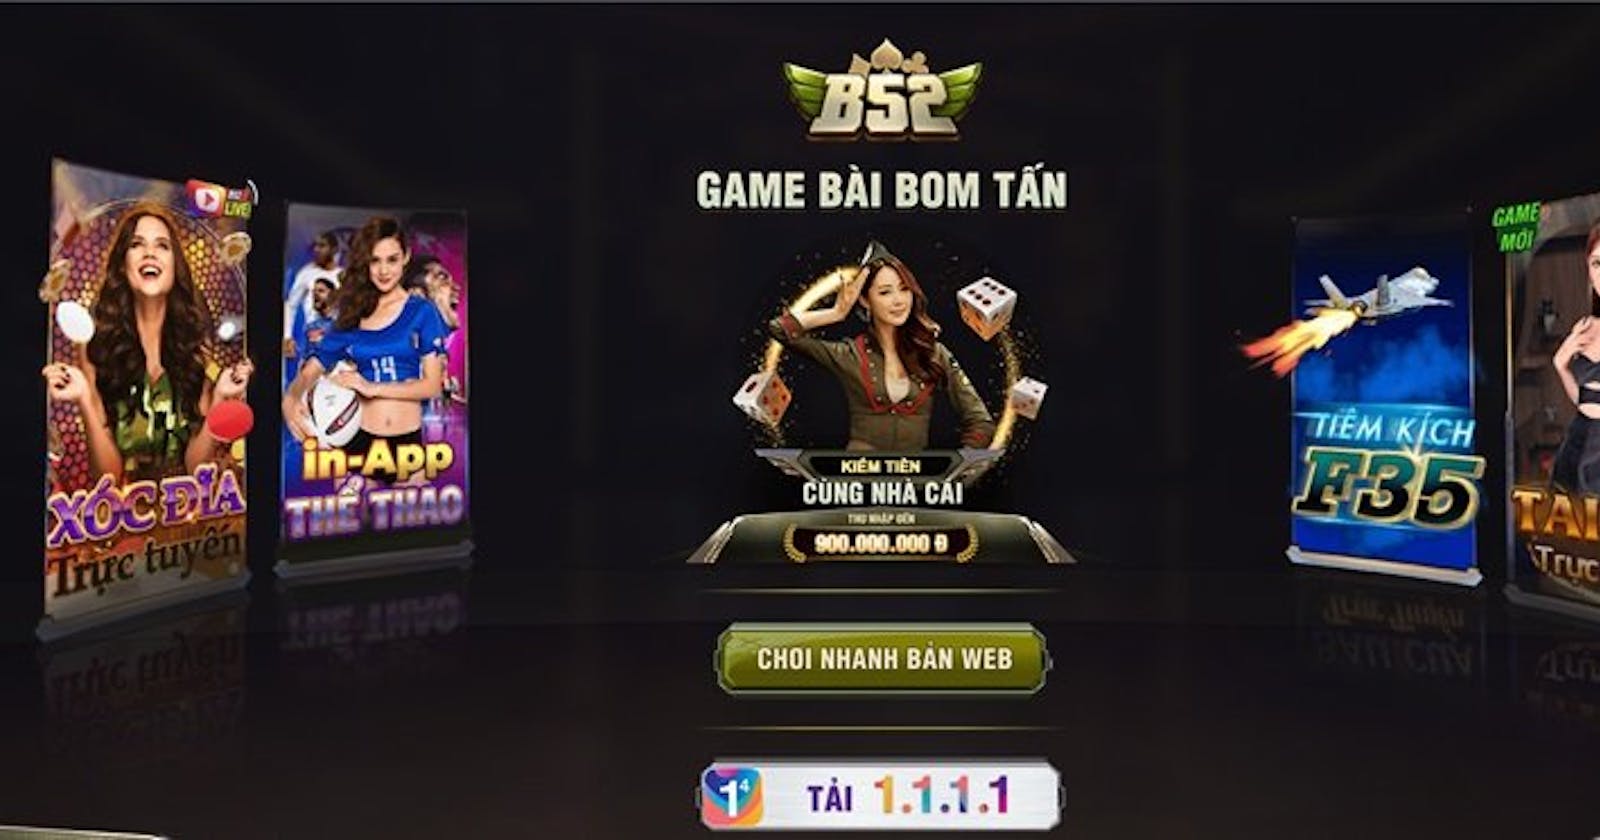 B52 - Tải App B52 Club - Play Game Bài Bom Tấn Chính Thức | 12b52.club